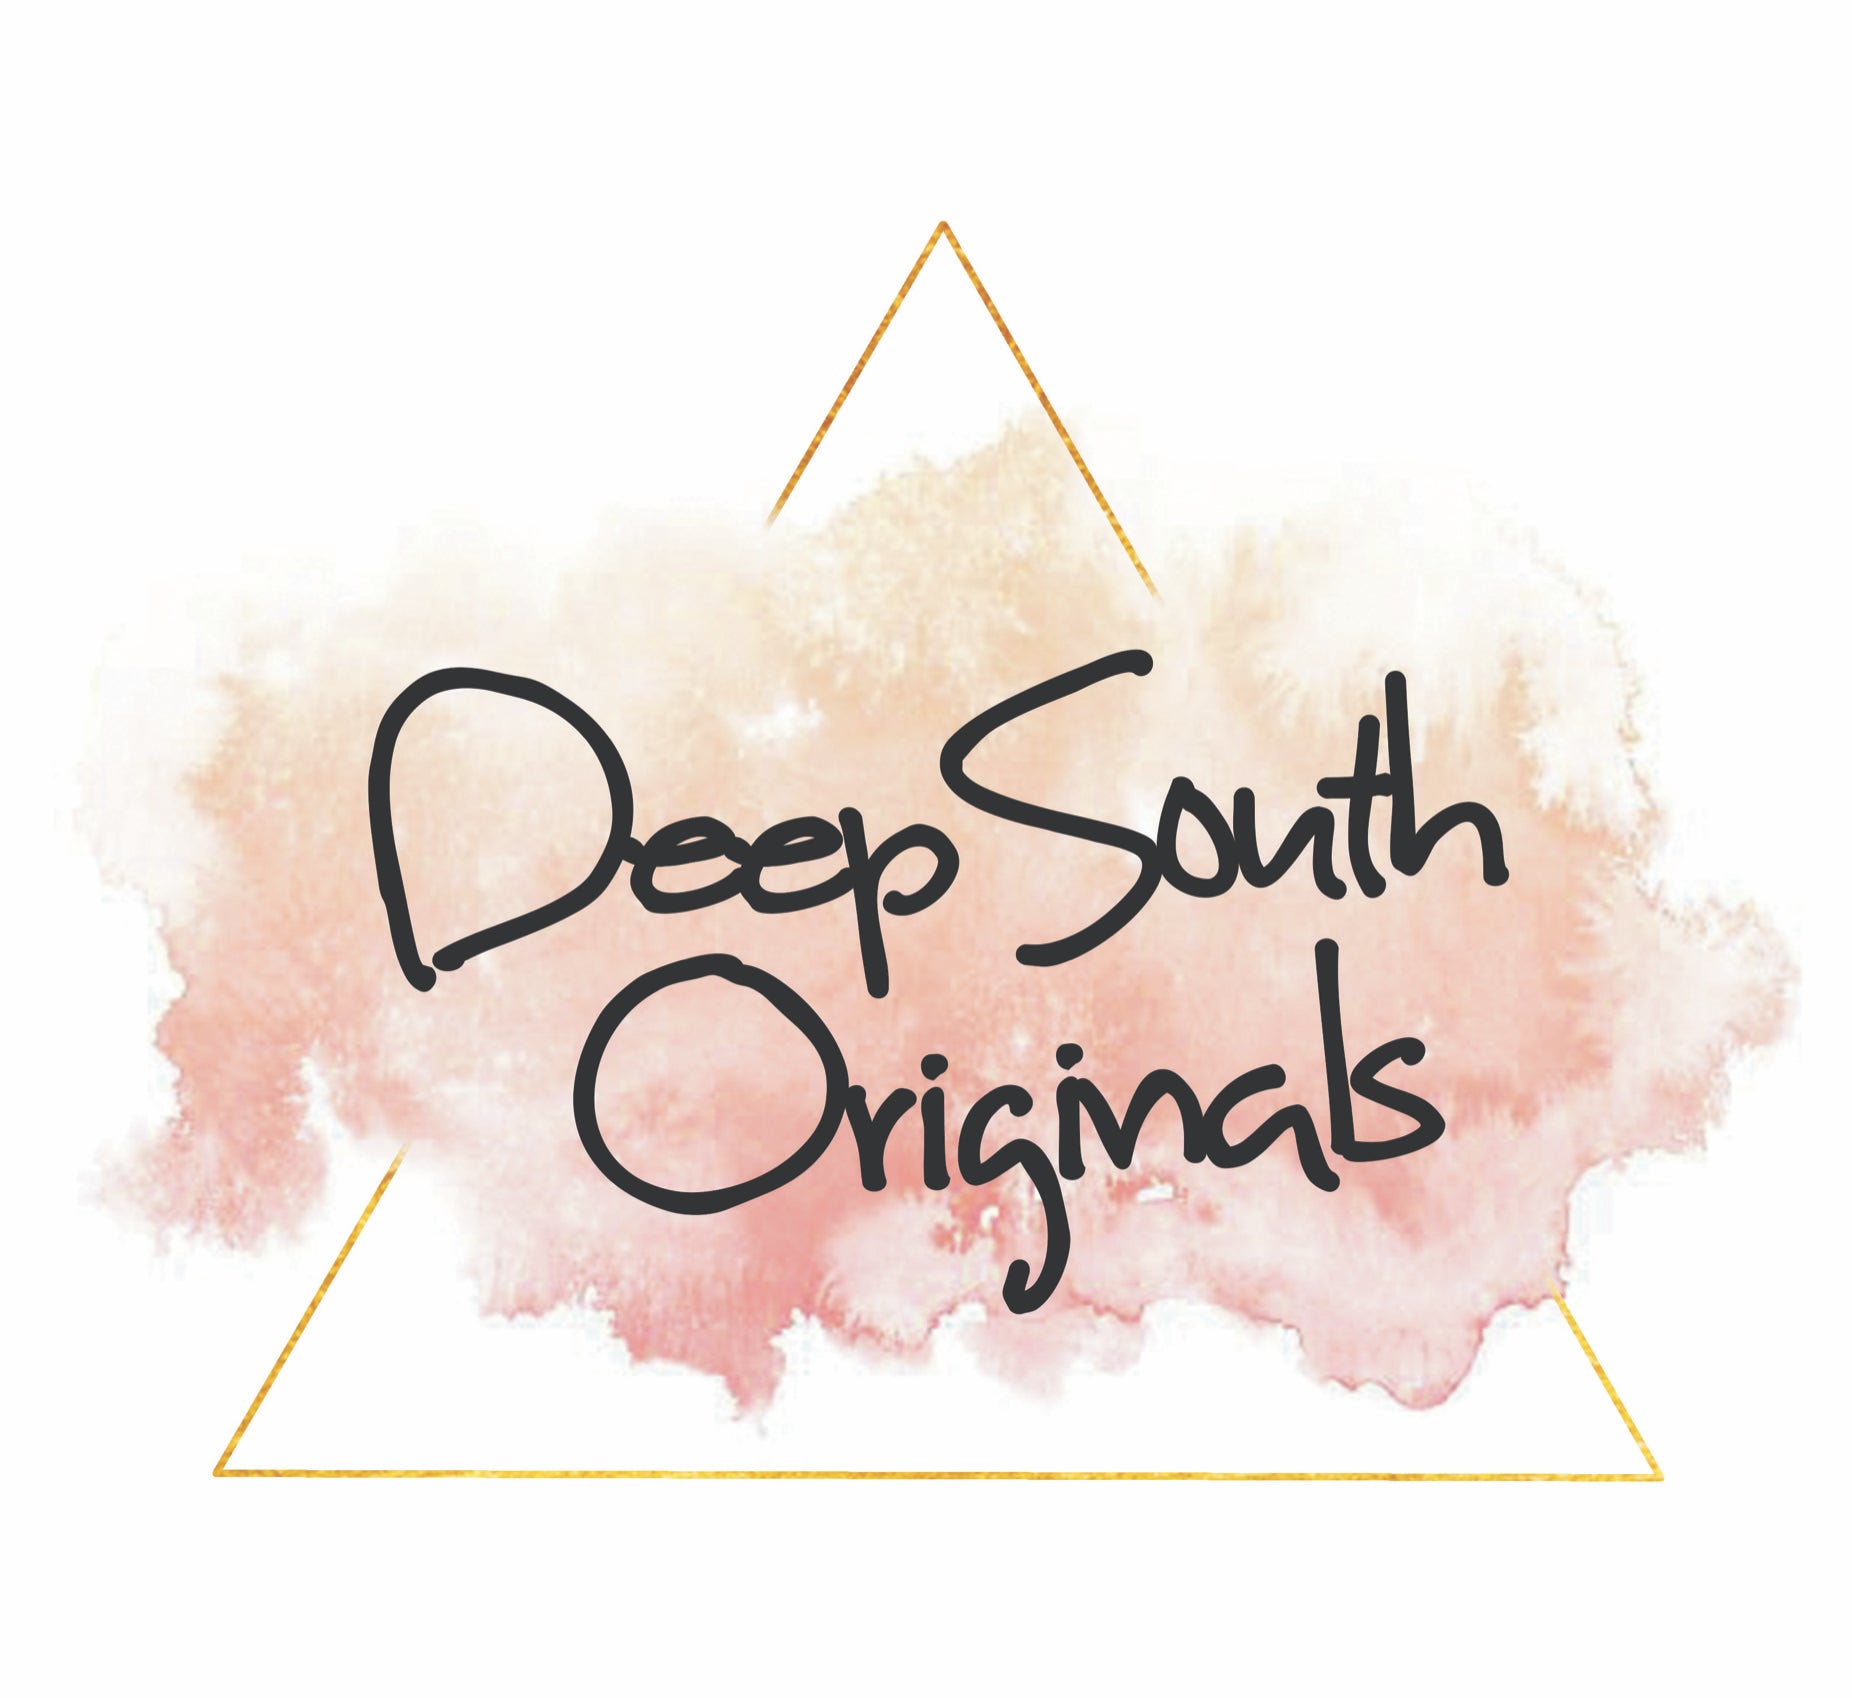 Deep South Originals